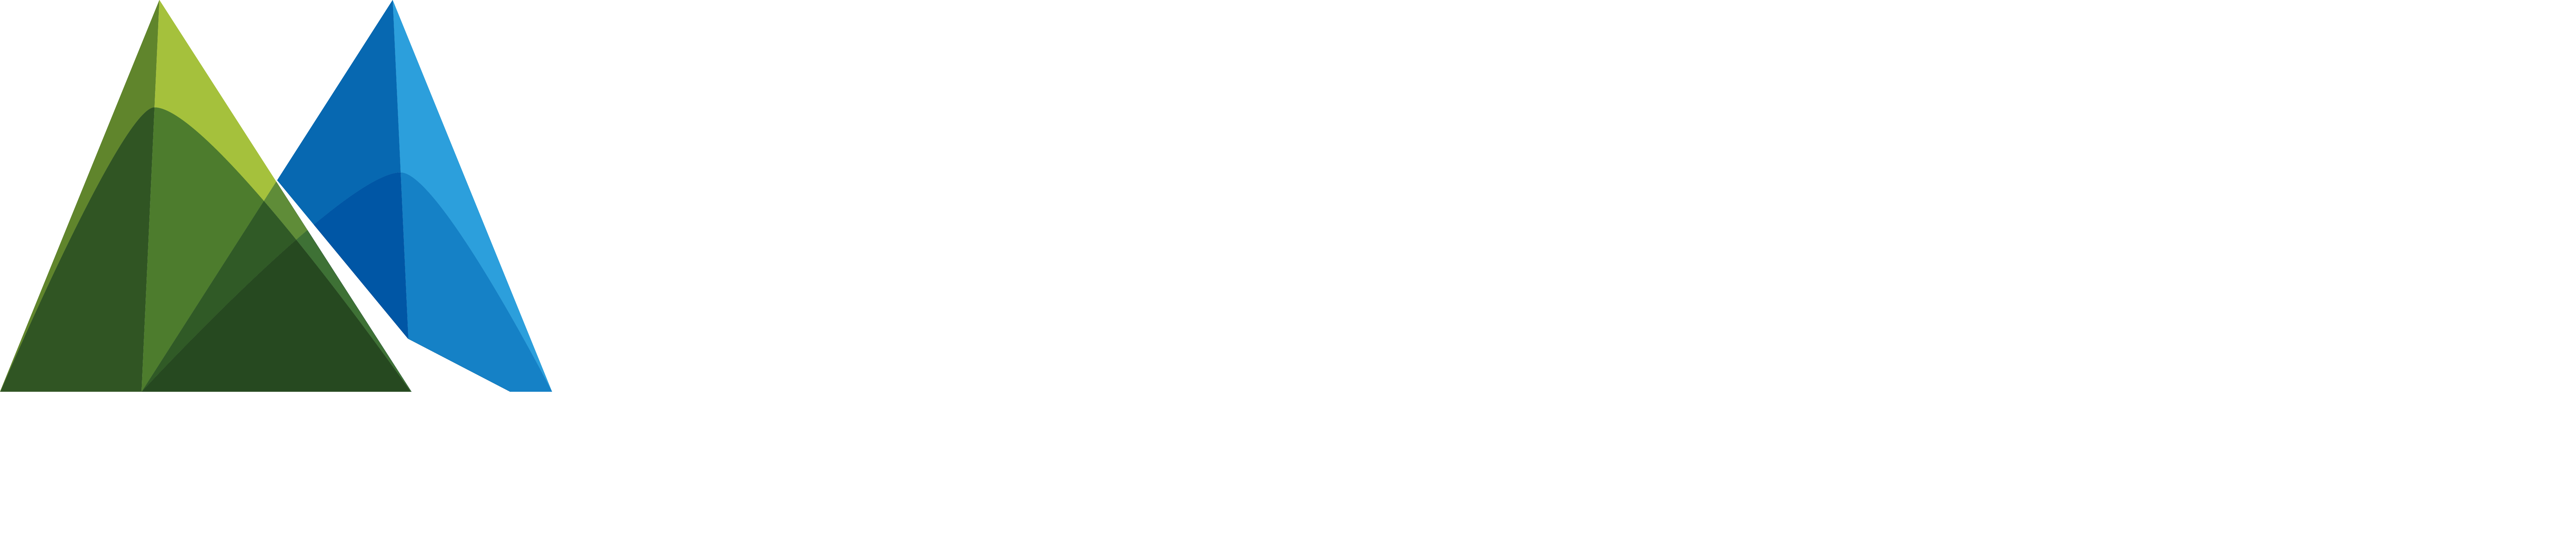 Mann Mortgage home loans logo